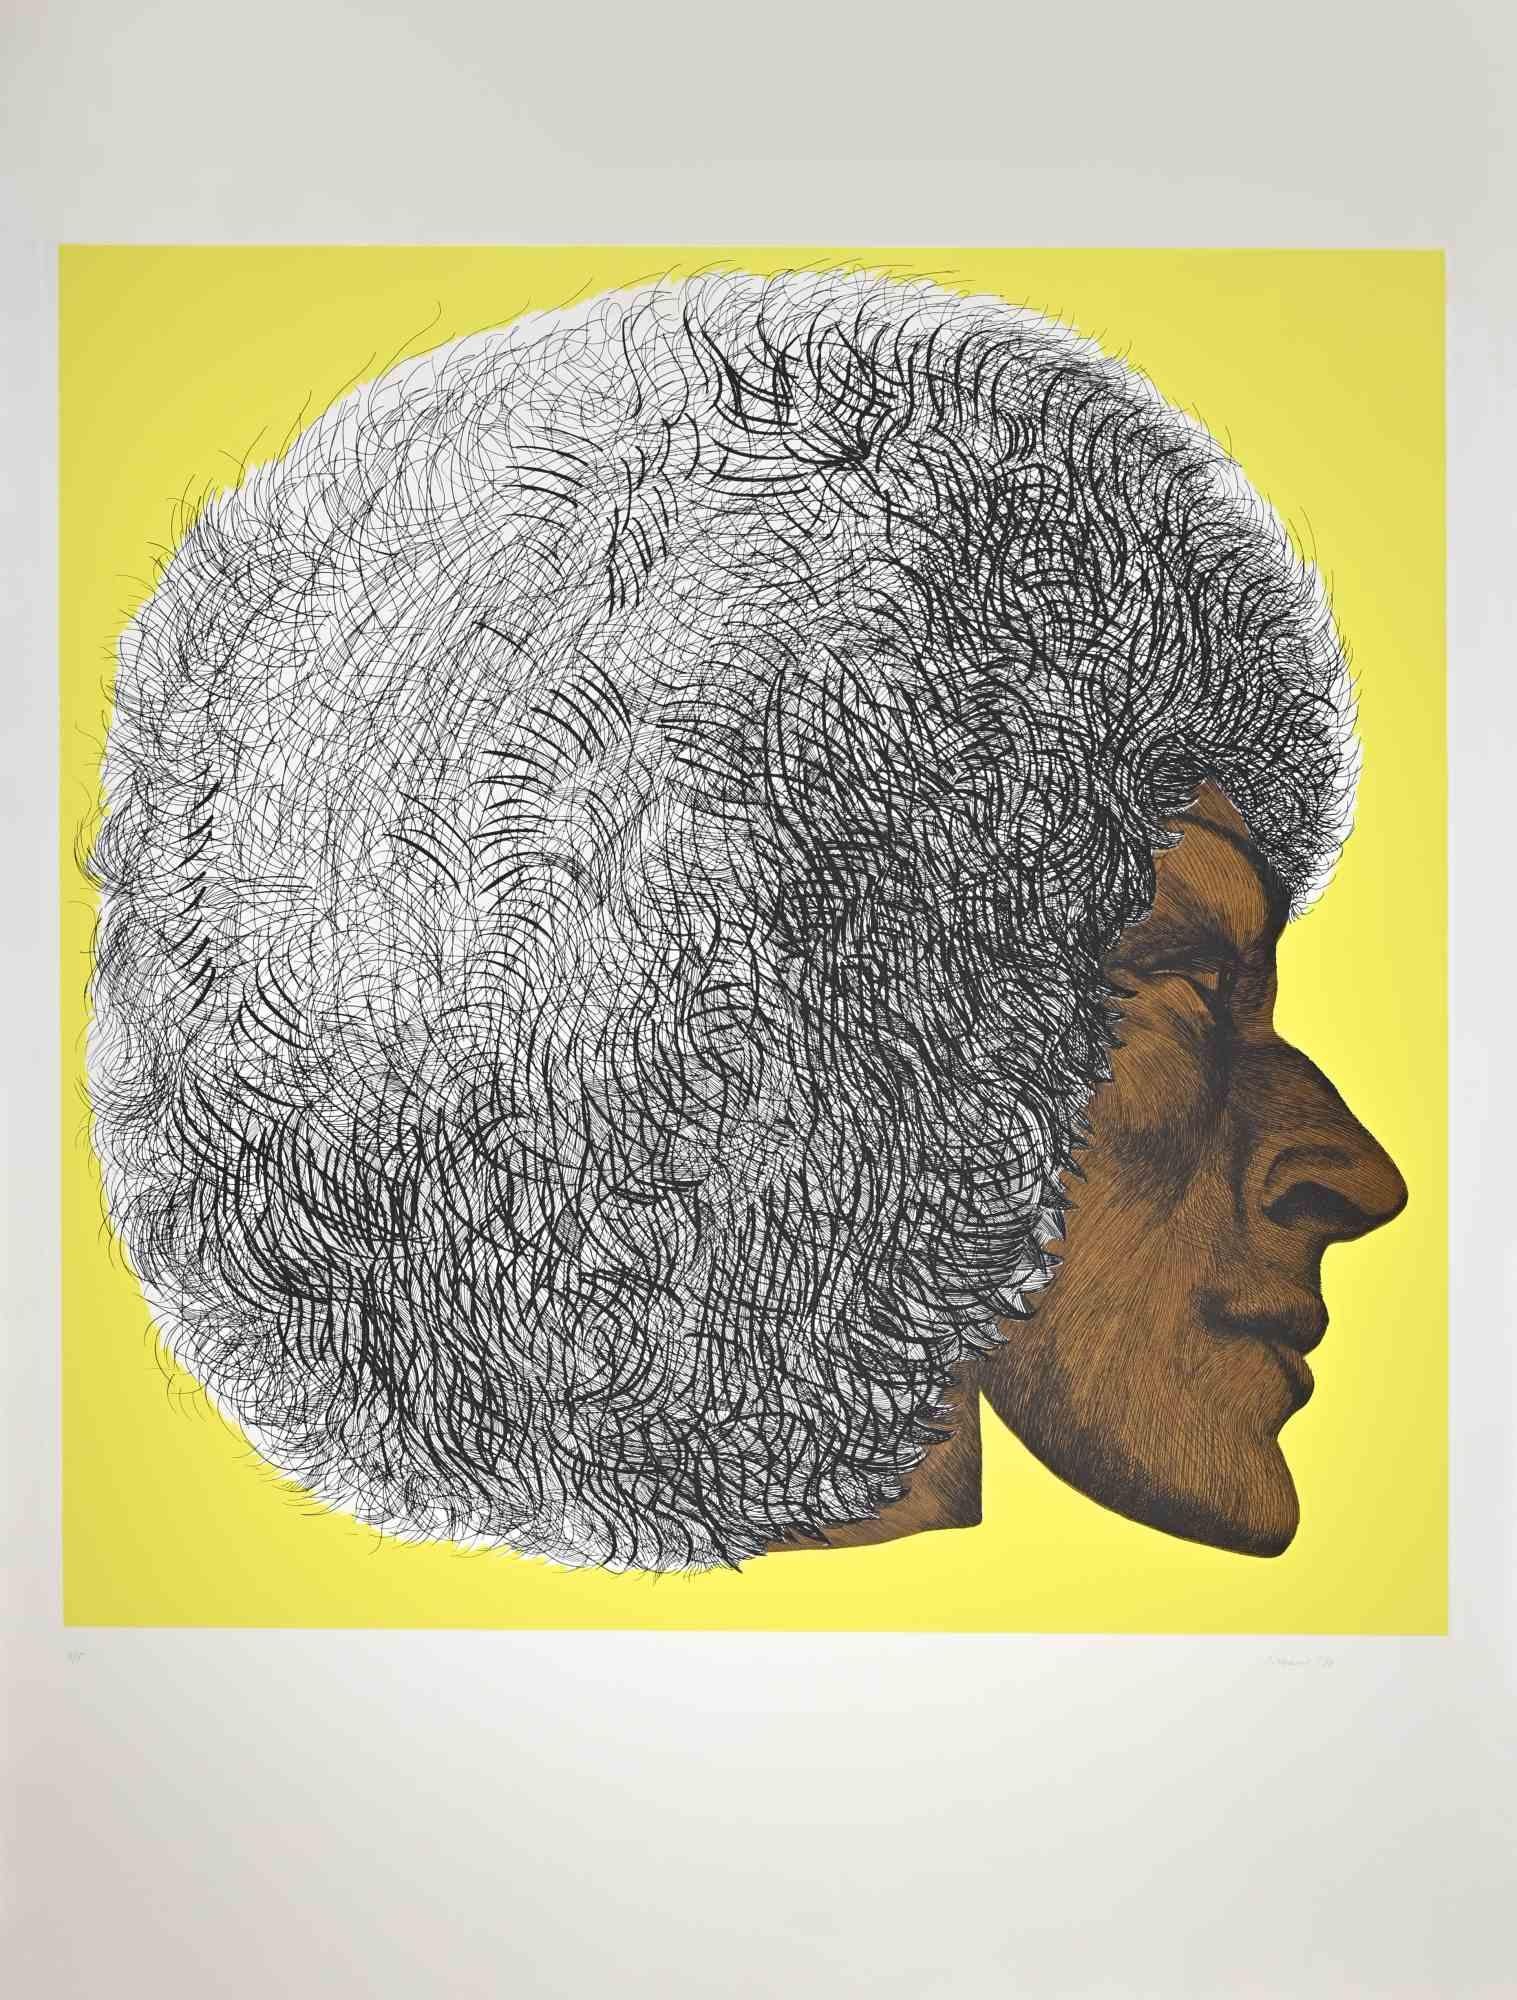 Profile Yellow II - Profilo giallo II ist ein zeitgenössisches Kunstwerk von Giacomo Porzano aus dem Jahr 1972.

Vom Künstler mit Bleistift handsigniert und datiert.

Am unteren Rand nummeriert. Auflage von 4/5